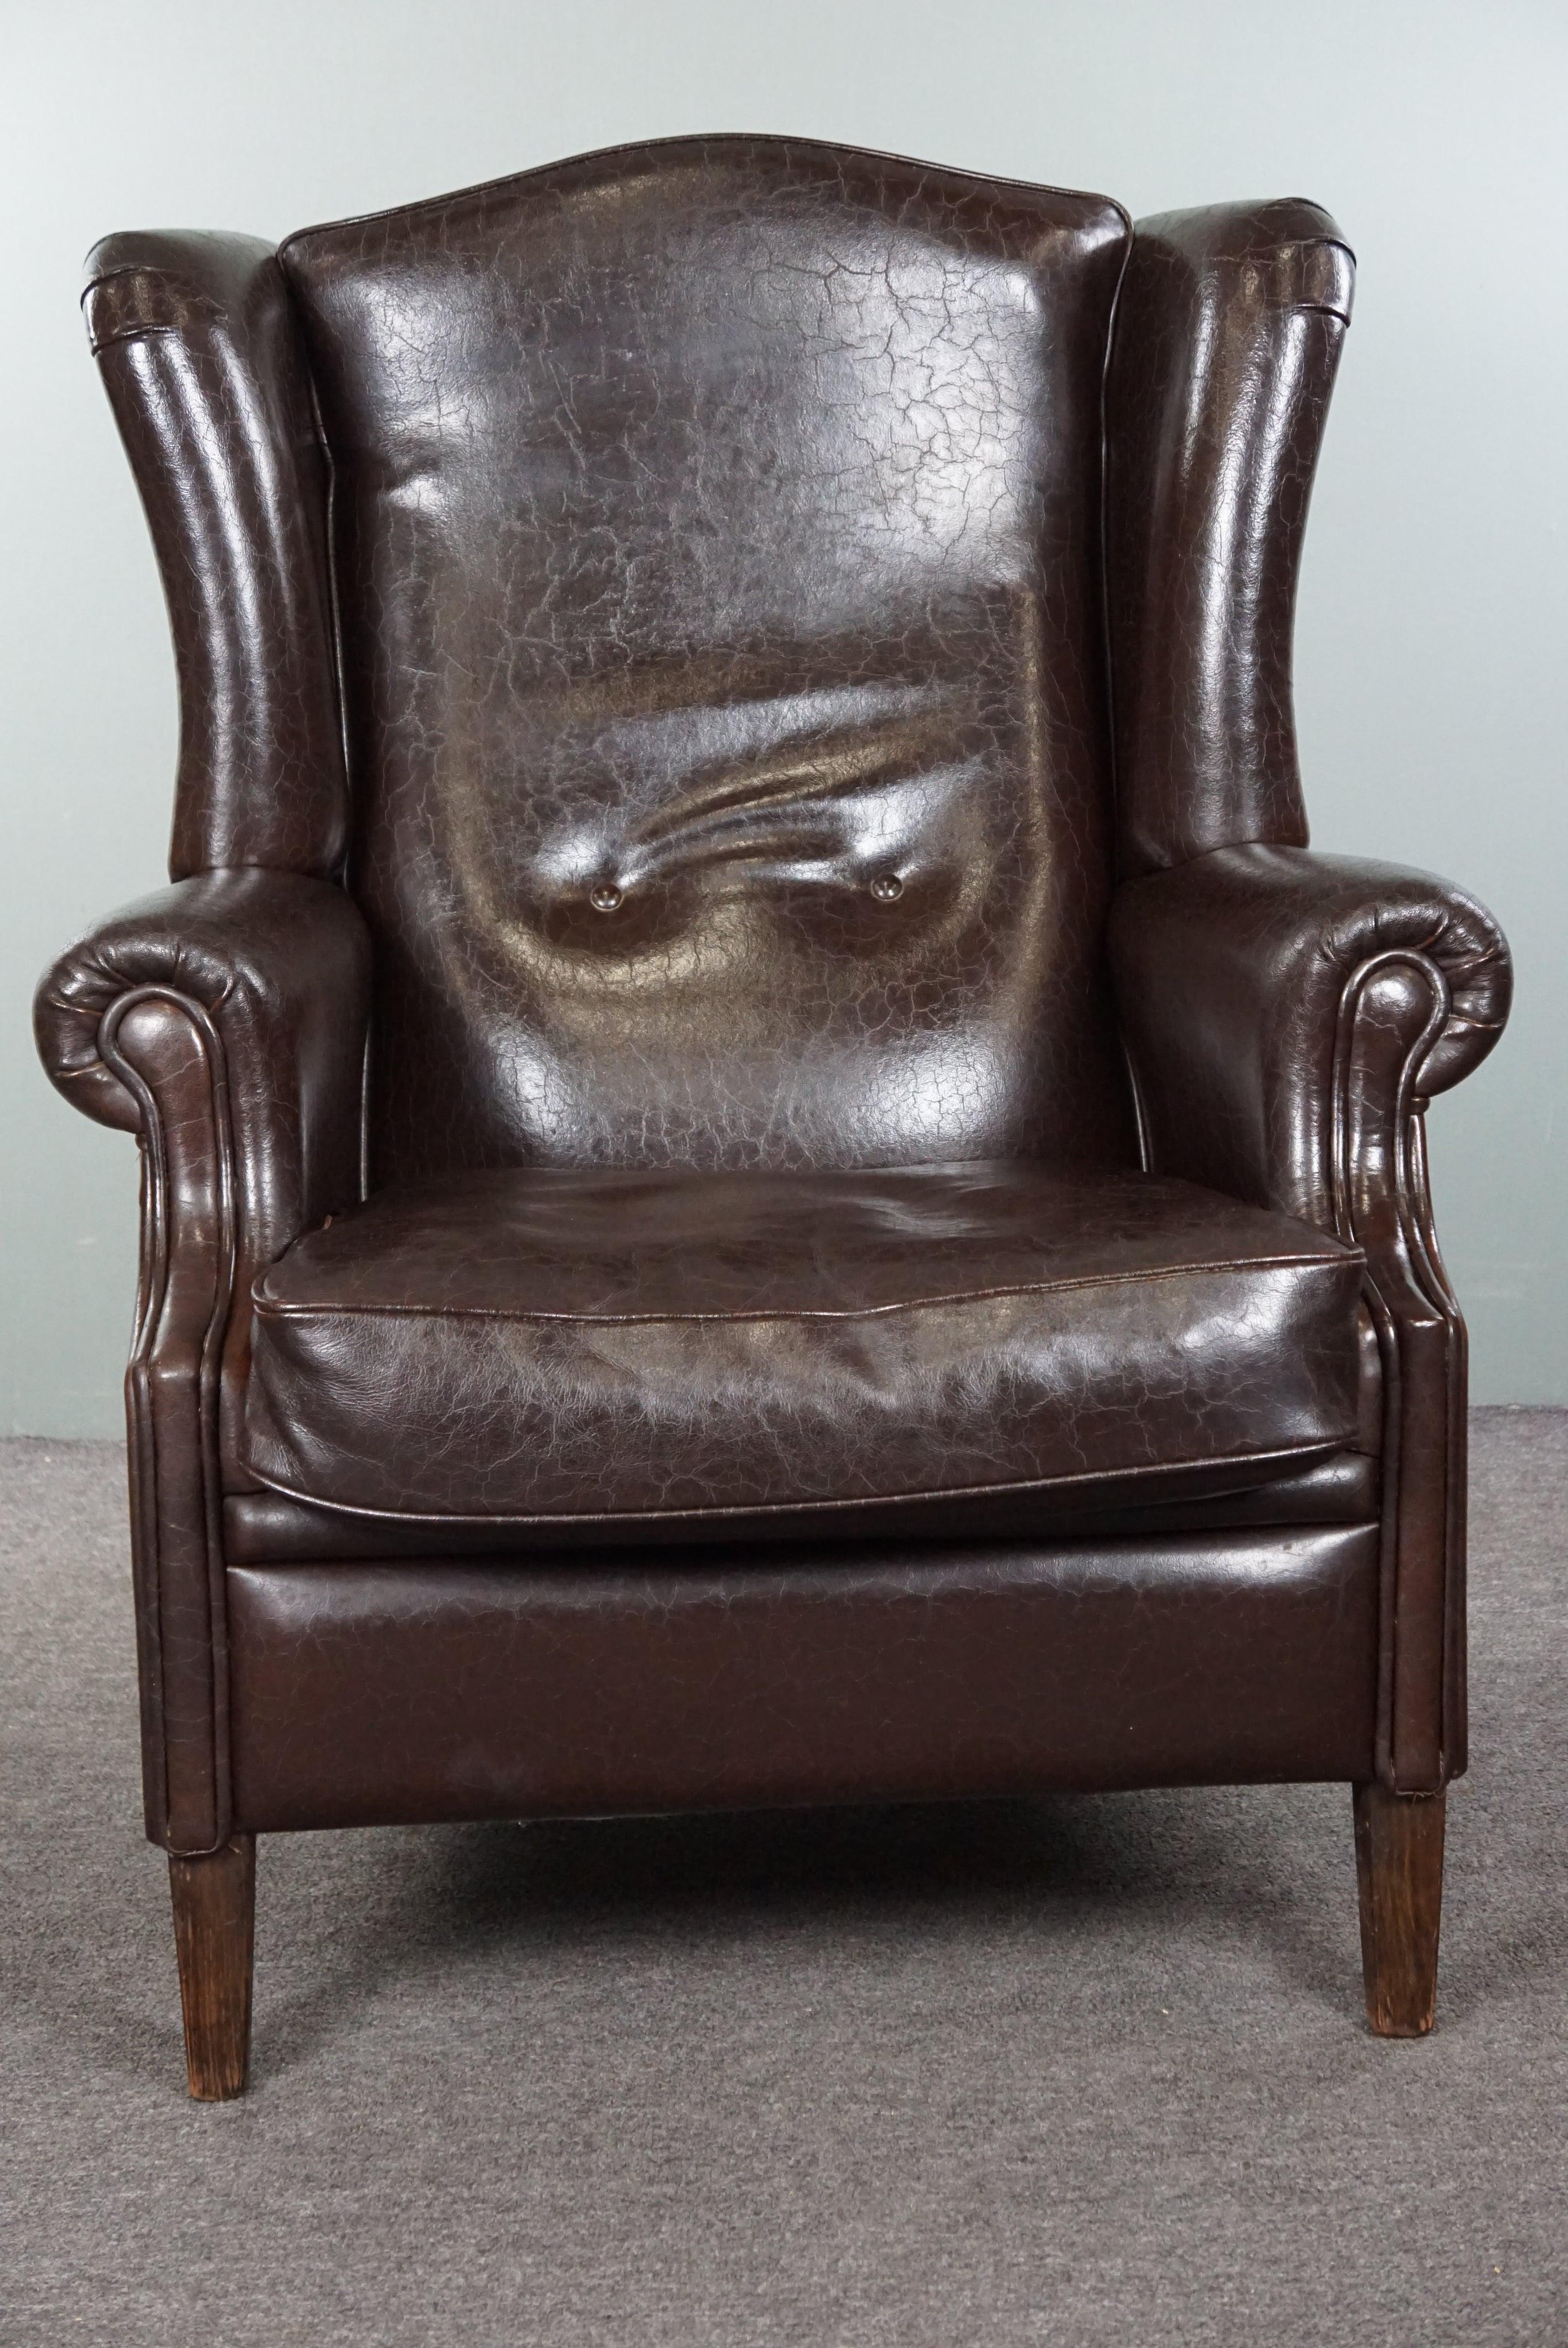 Nous vous proposons ce fauteuil à oreilles en cuir bien ajusté, d'une belle couleur brun foncé. Ce fauteuil à oreilles en cuir brun foncé, extrêmement bien conservé et impressionnant, rehausse votre intérieur. Ce fauteuil incarne non seulement une